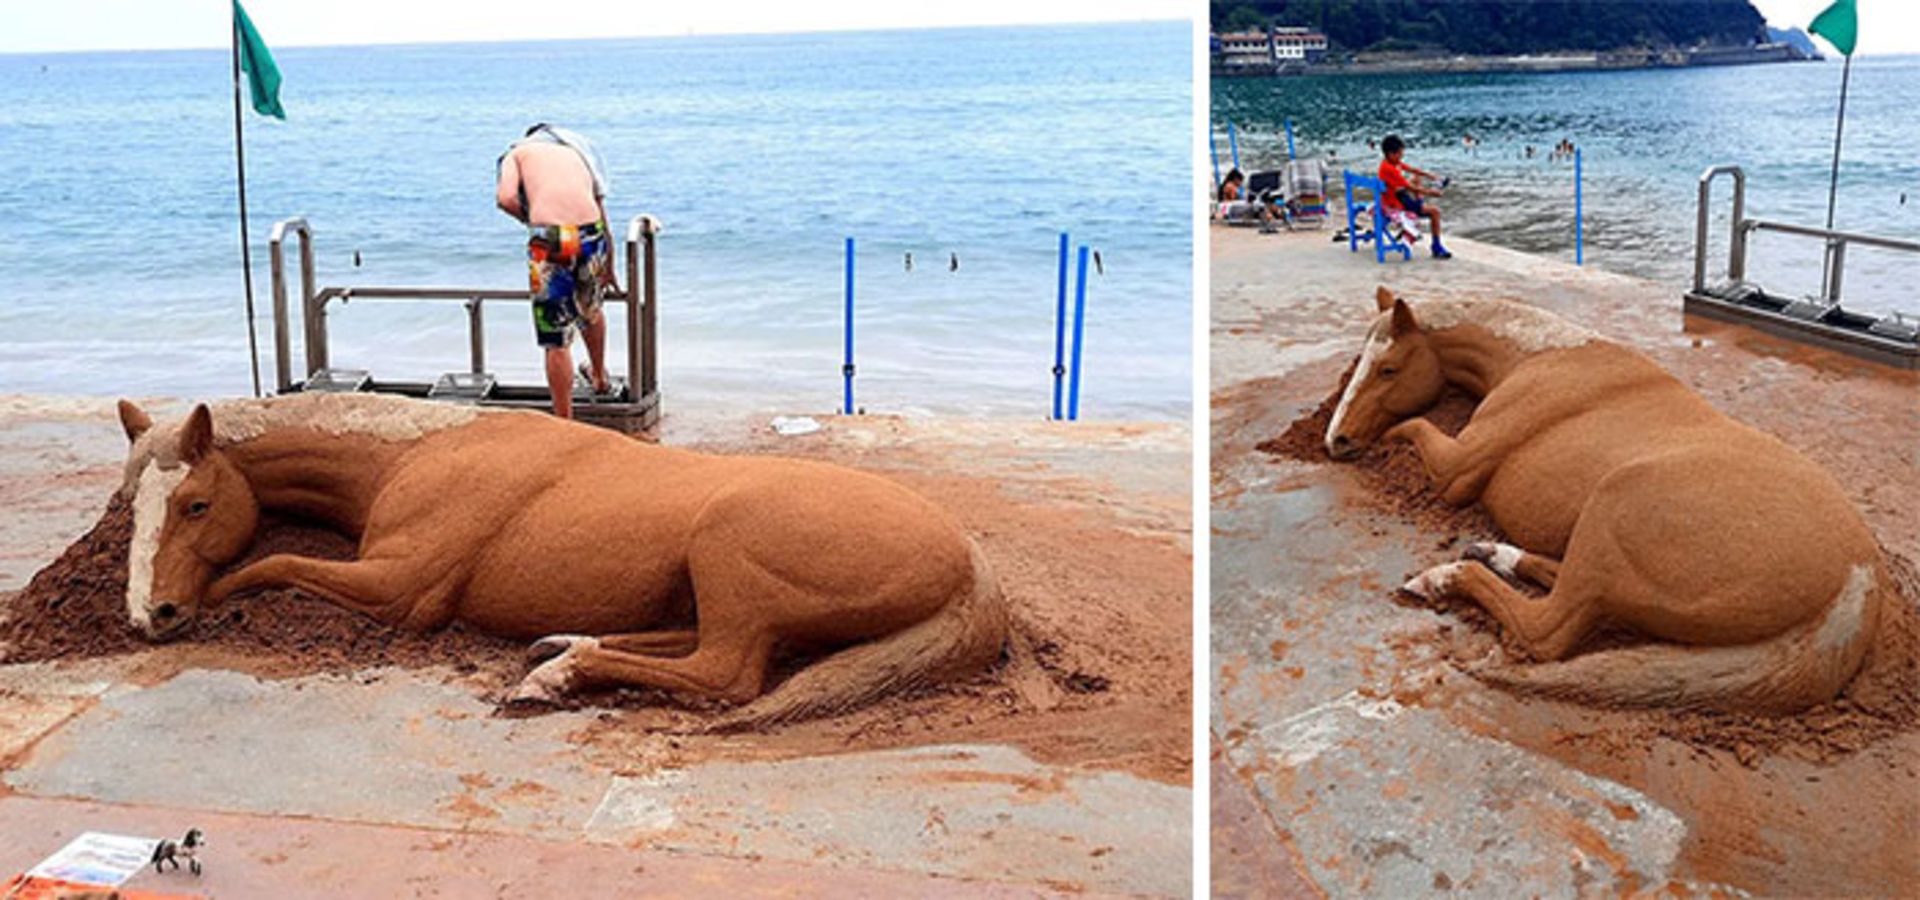 مجسمه شنی اسب عسلی در ساحل